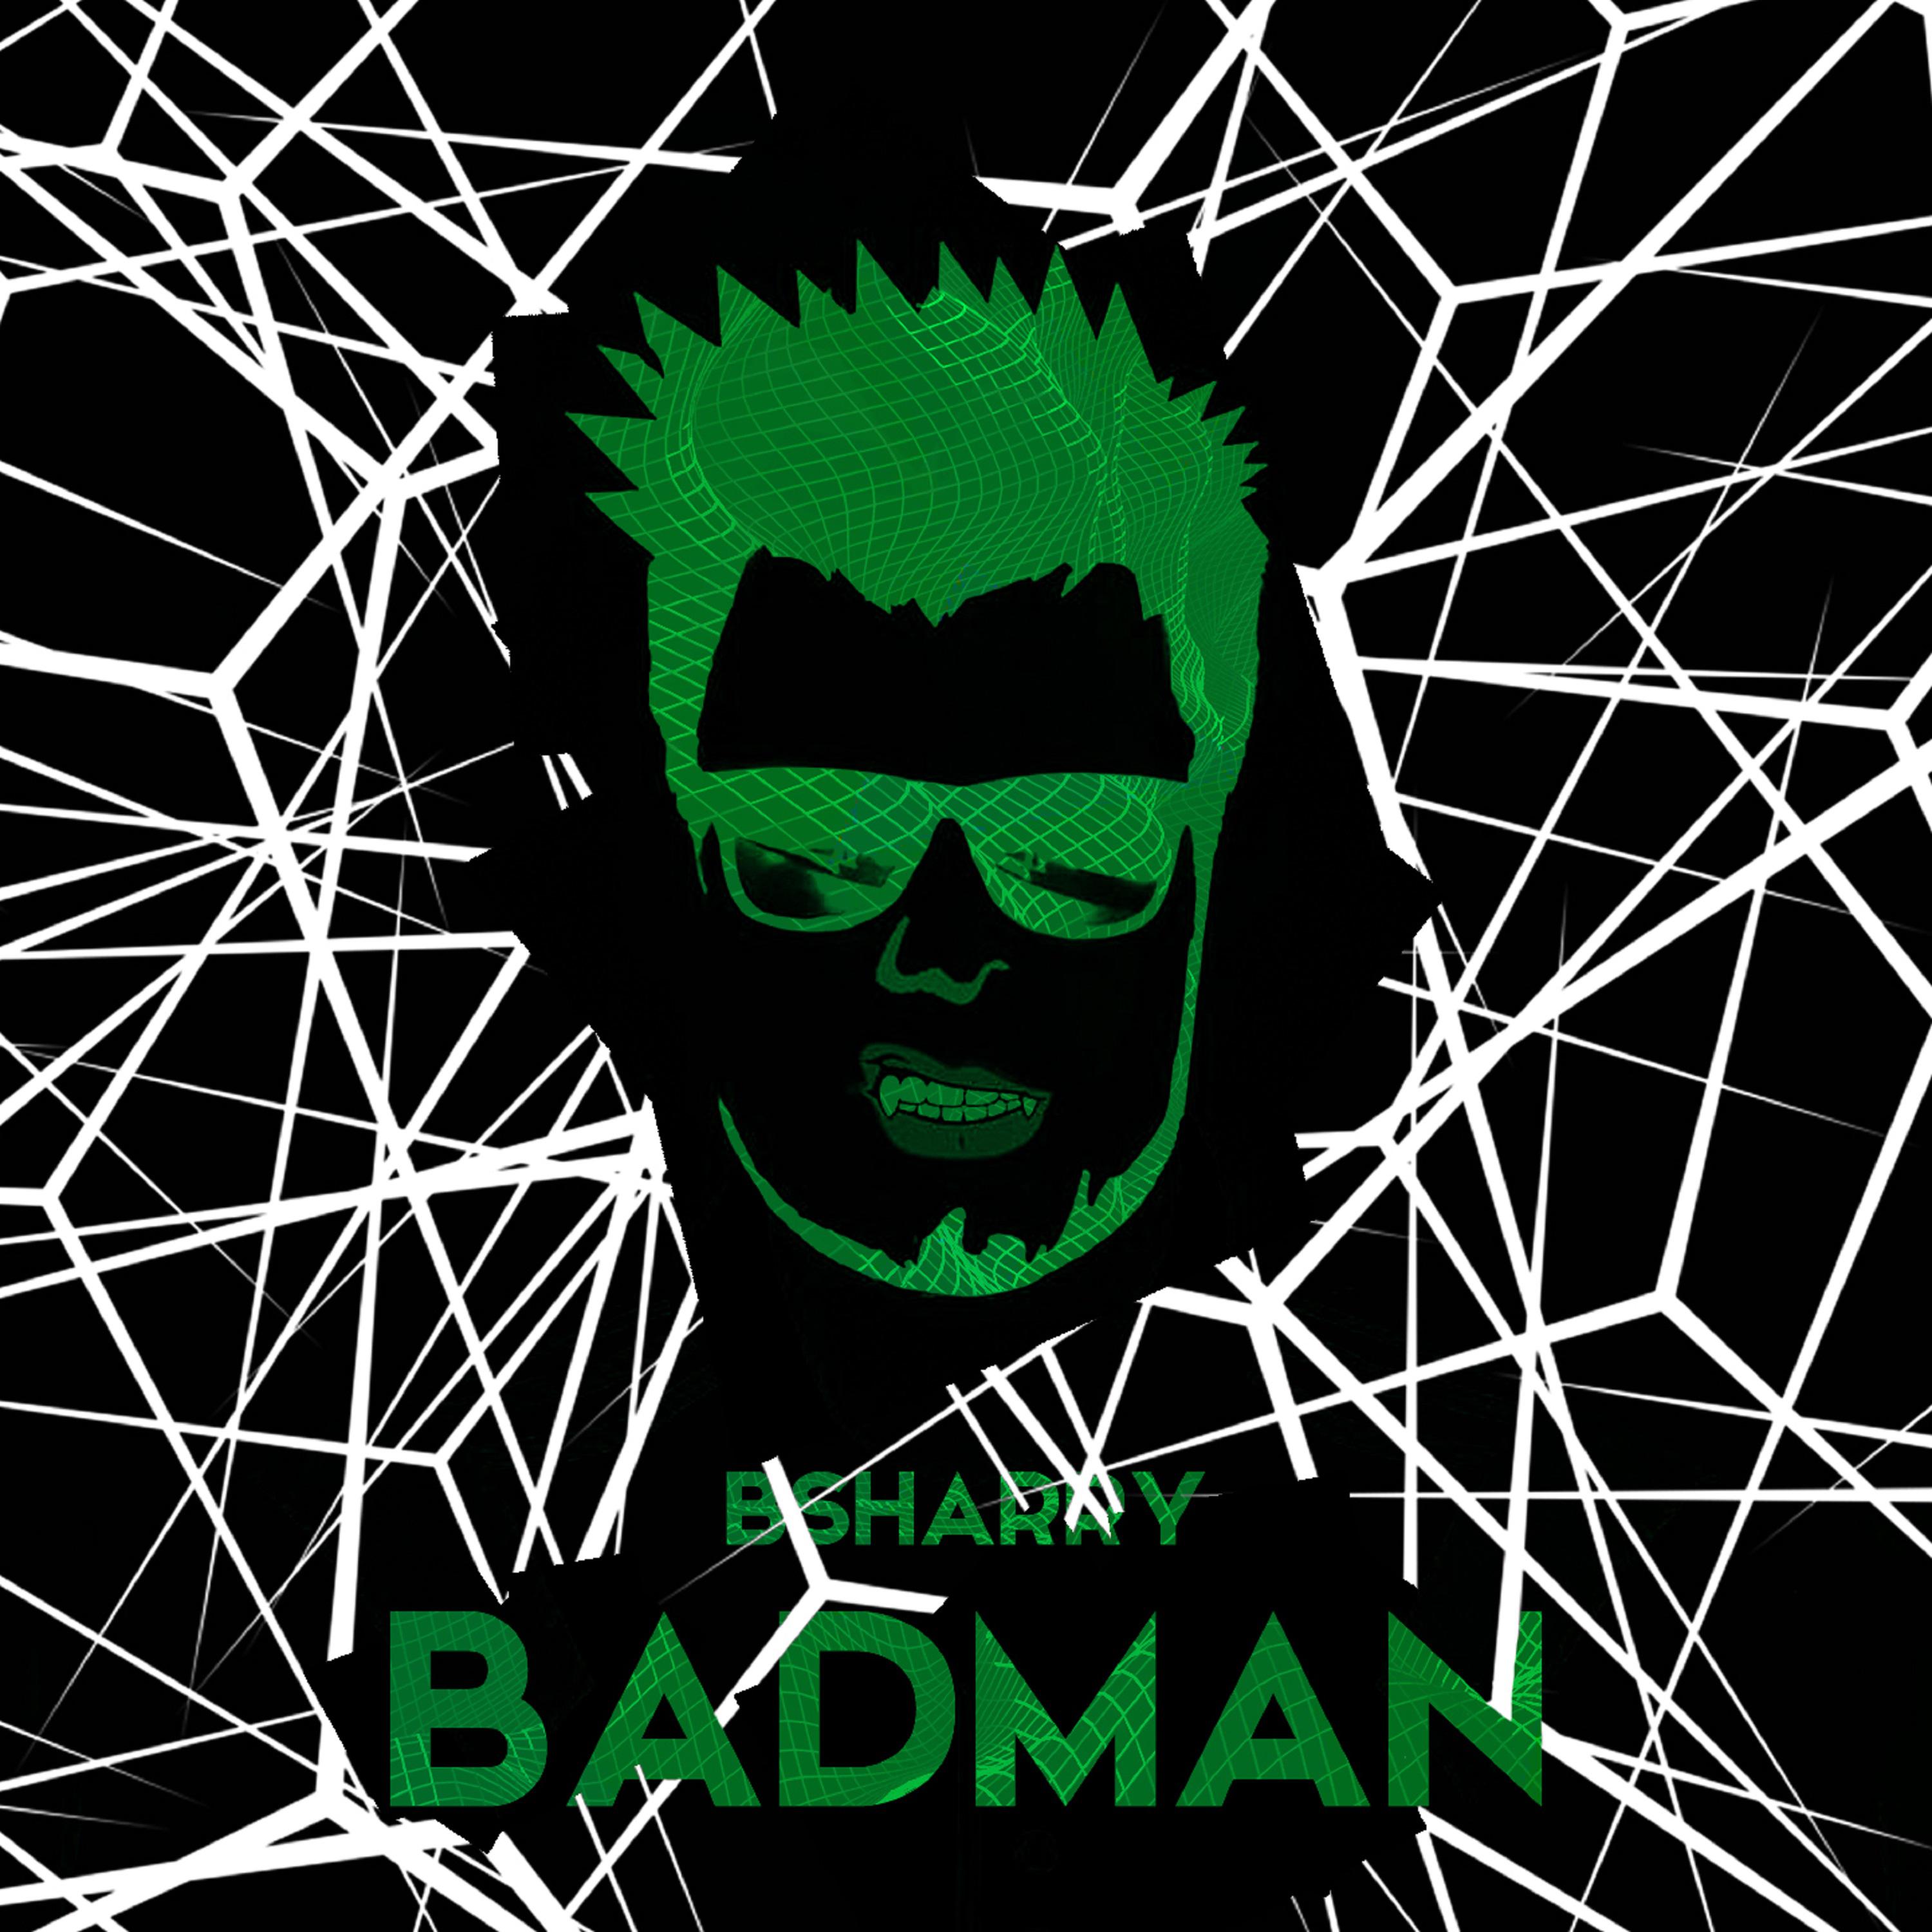 Badman (Extended Mix)